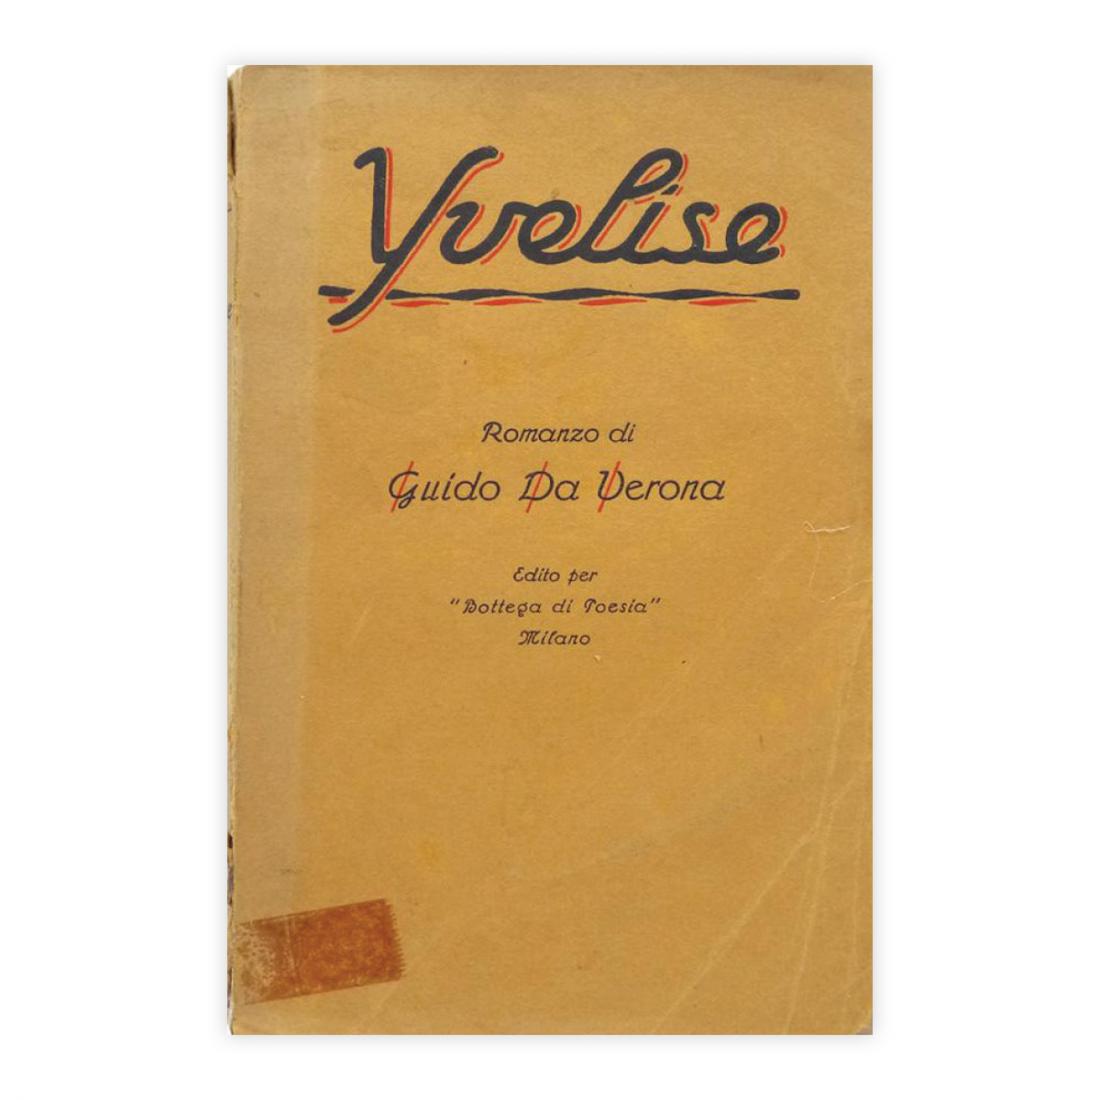 Guido da Verona - Yvelise